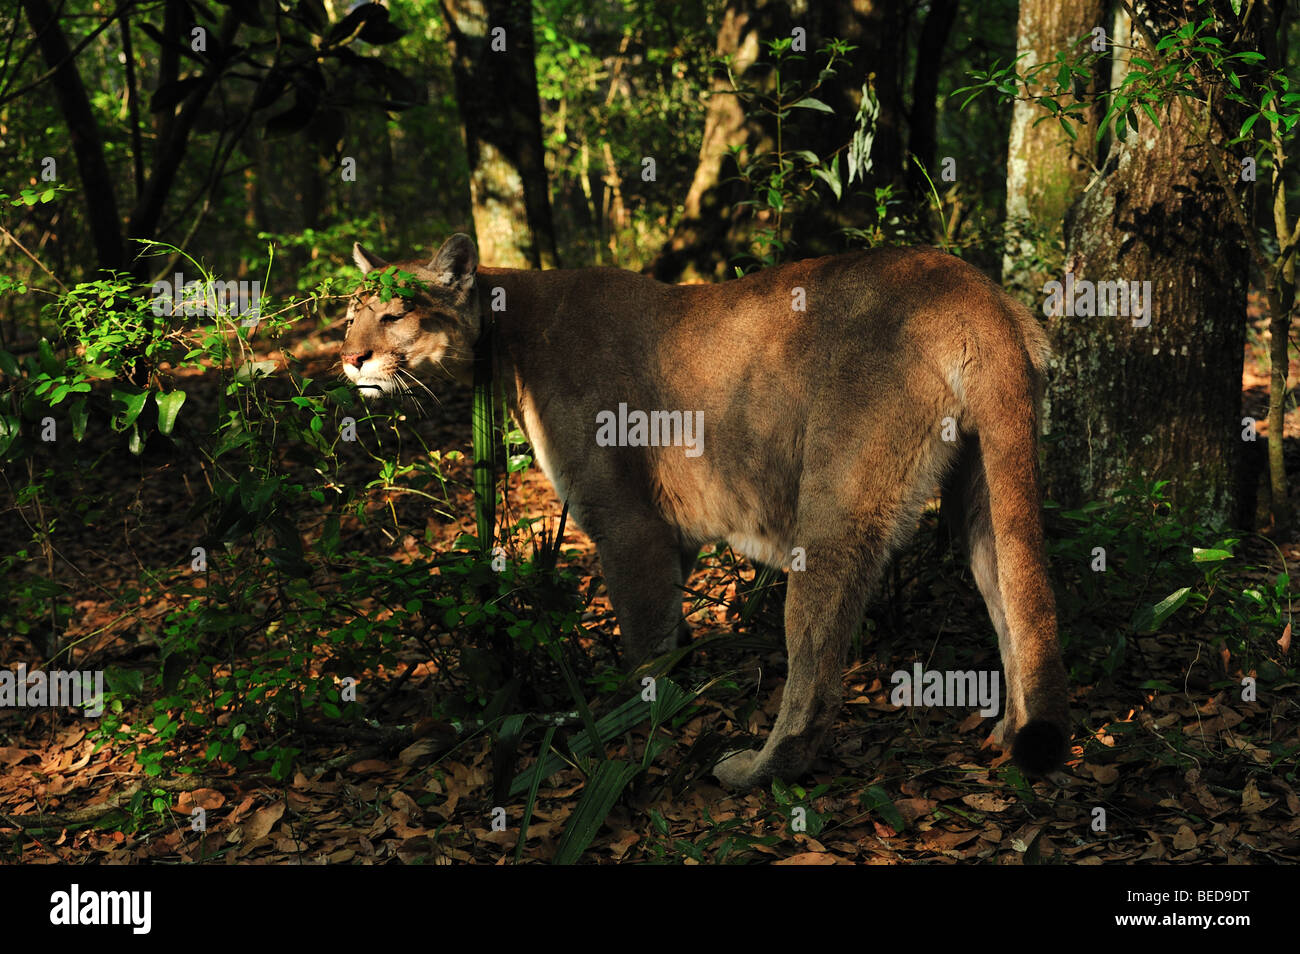 Florida panther, Puma concolor coryi, Florida, captive Stock Photo